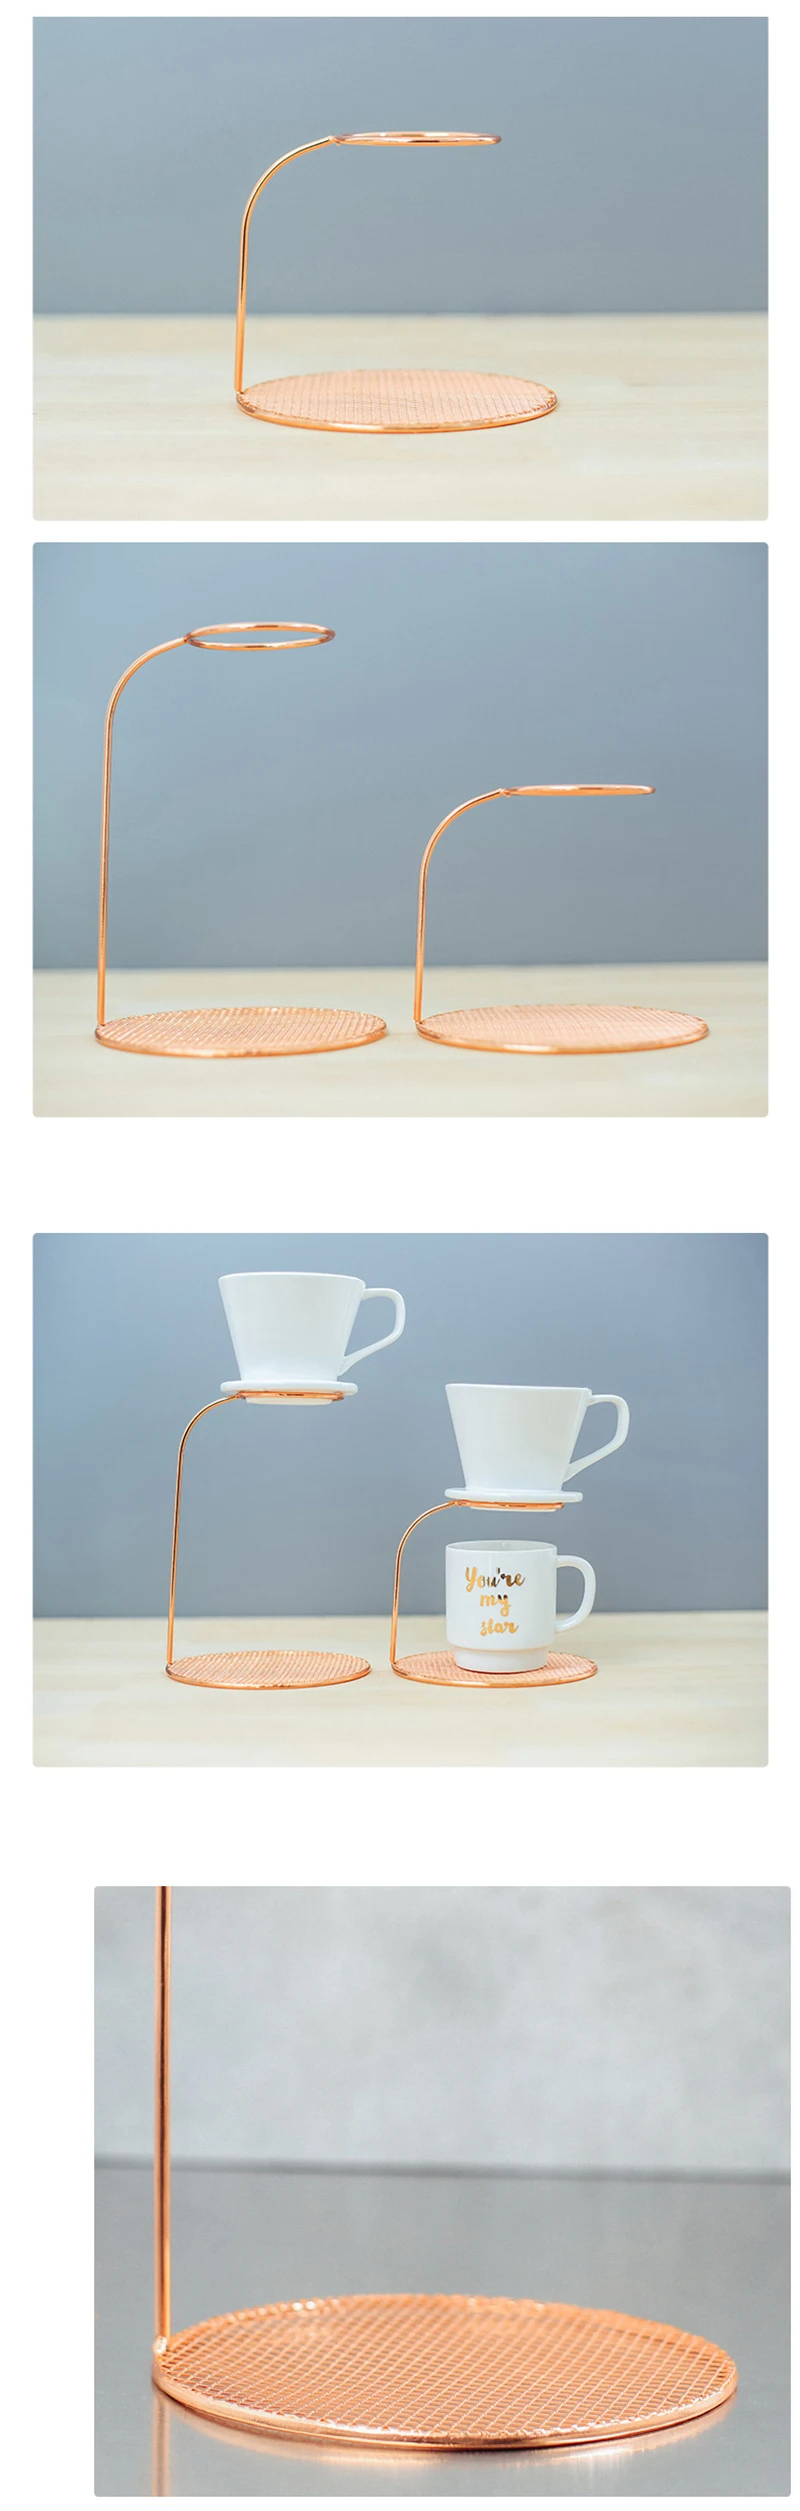 Розовое золото, фильтр для кофе, стойка для чайных листьев, держатель для фильтра, 2 размера, подставка для стоек, капельница, фильтр для кофе, чашка